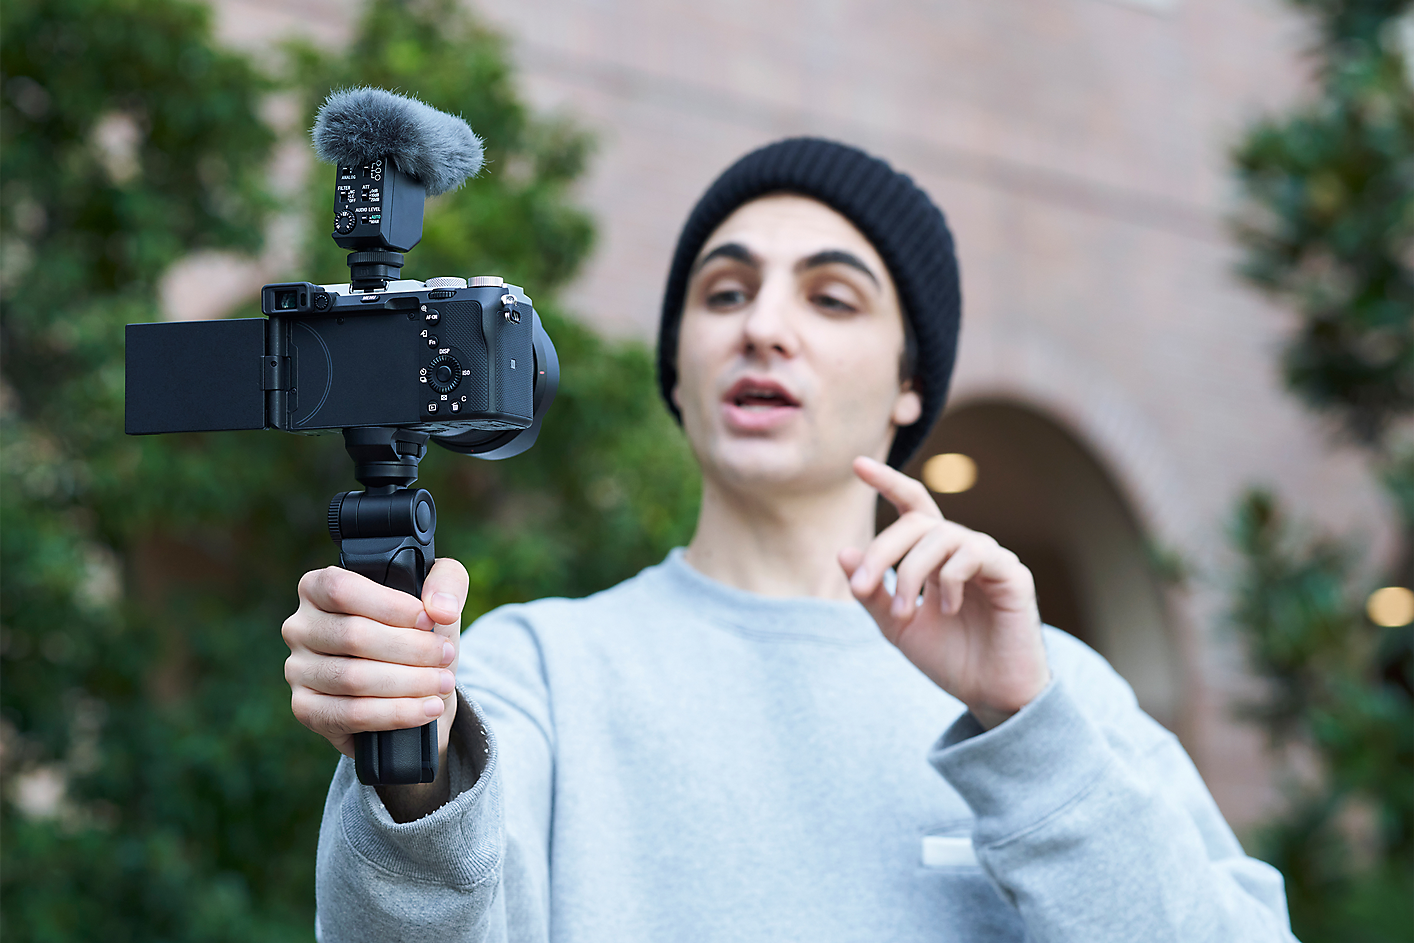 Slika osobe koja snima selfi fotoaparatom na koji je pričvršćen ECM-B10 podešen na superusmereni režim.